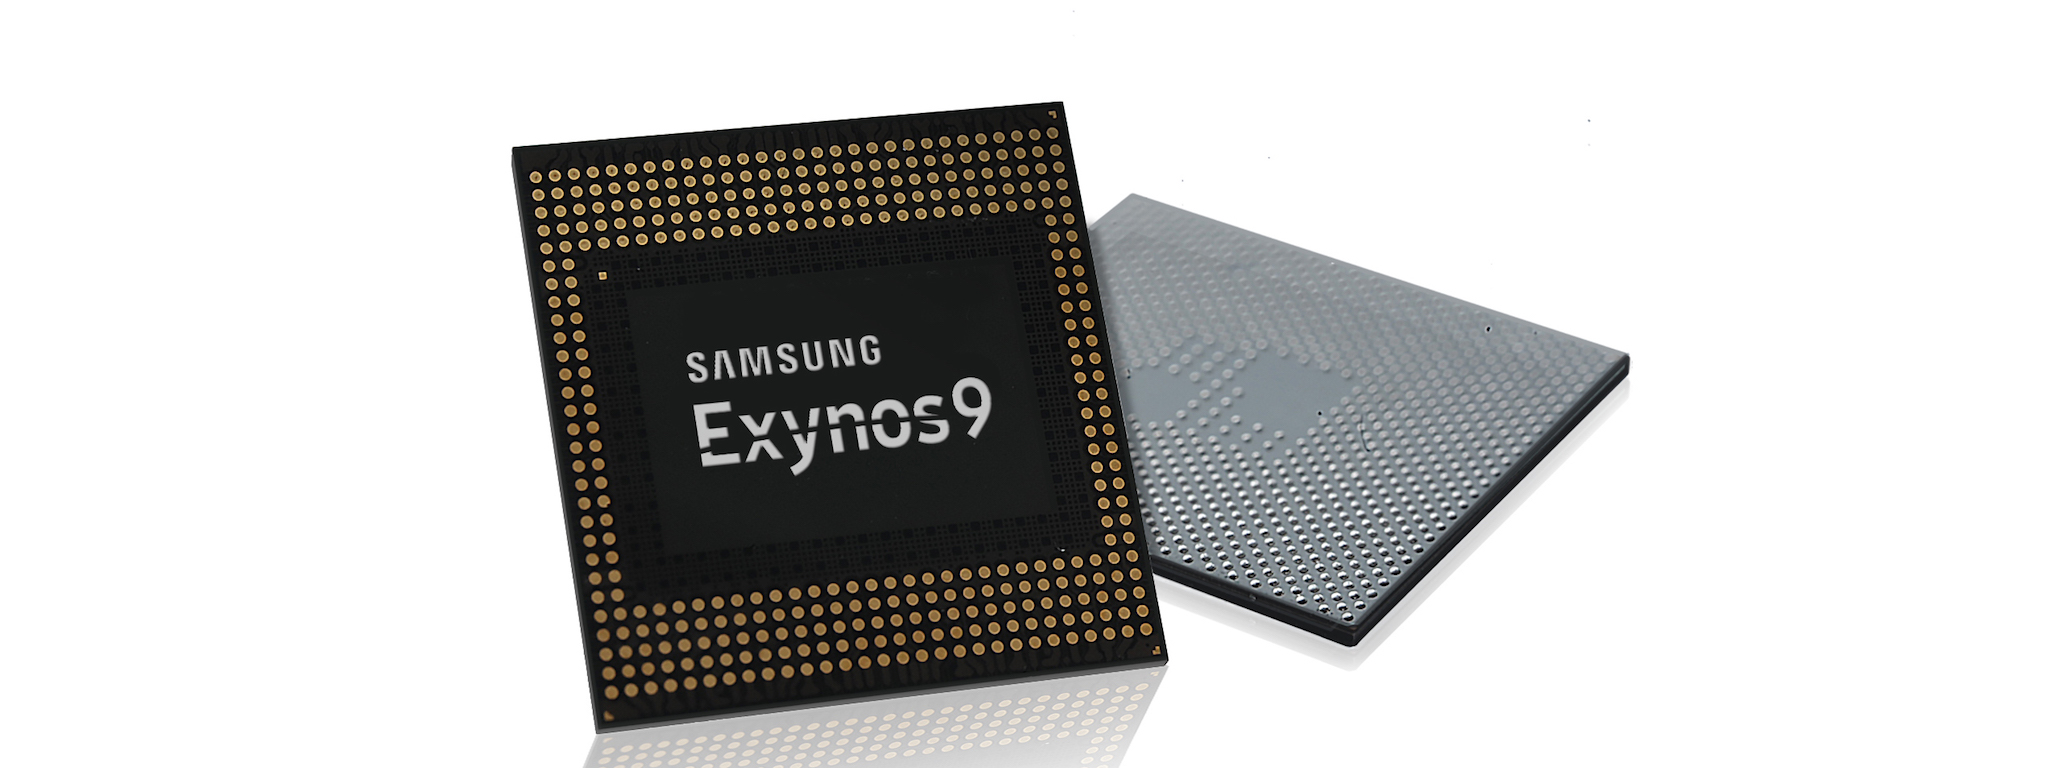 Samsung Exynos 9: tiến trình 10nm, 8 nhân xử lý, hỗ trợ quay 4k 120fps, có thể xuất hiện trên S8